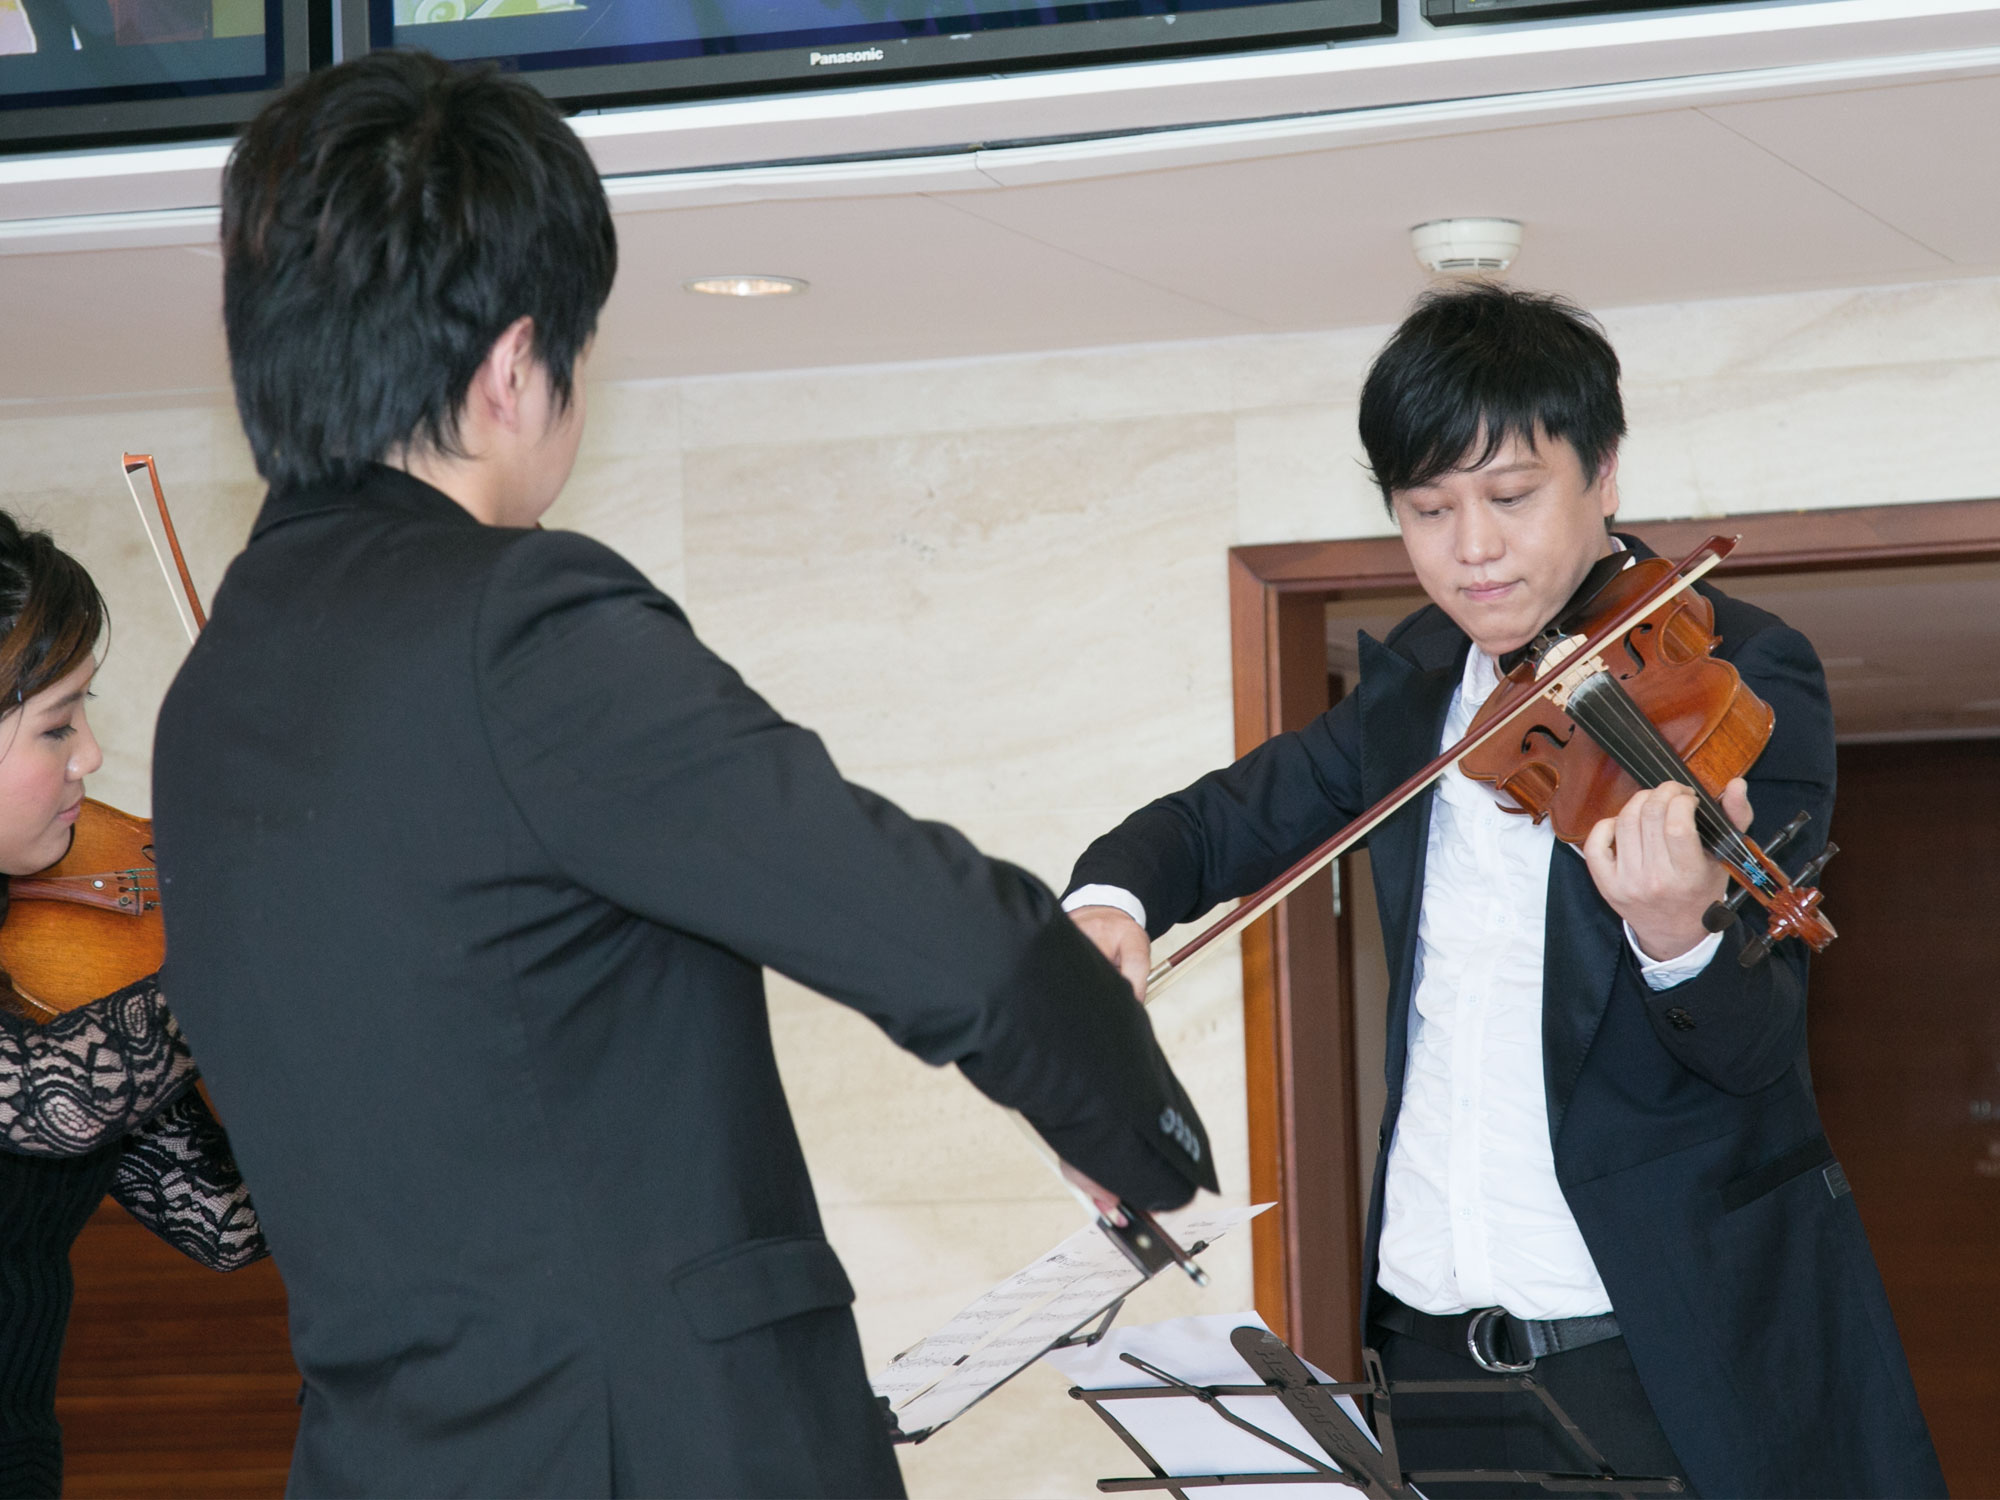 著名小提琴家 Vincent Liauw 與其學生合奏艾爾加的愛的禮讚（Salut d'Amour）